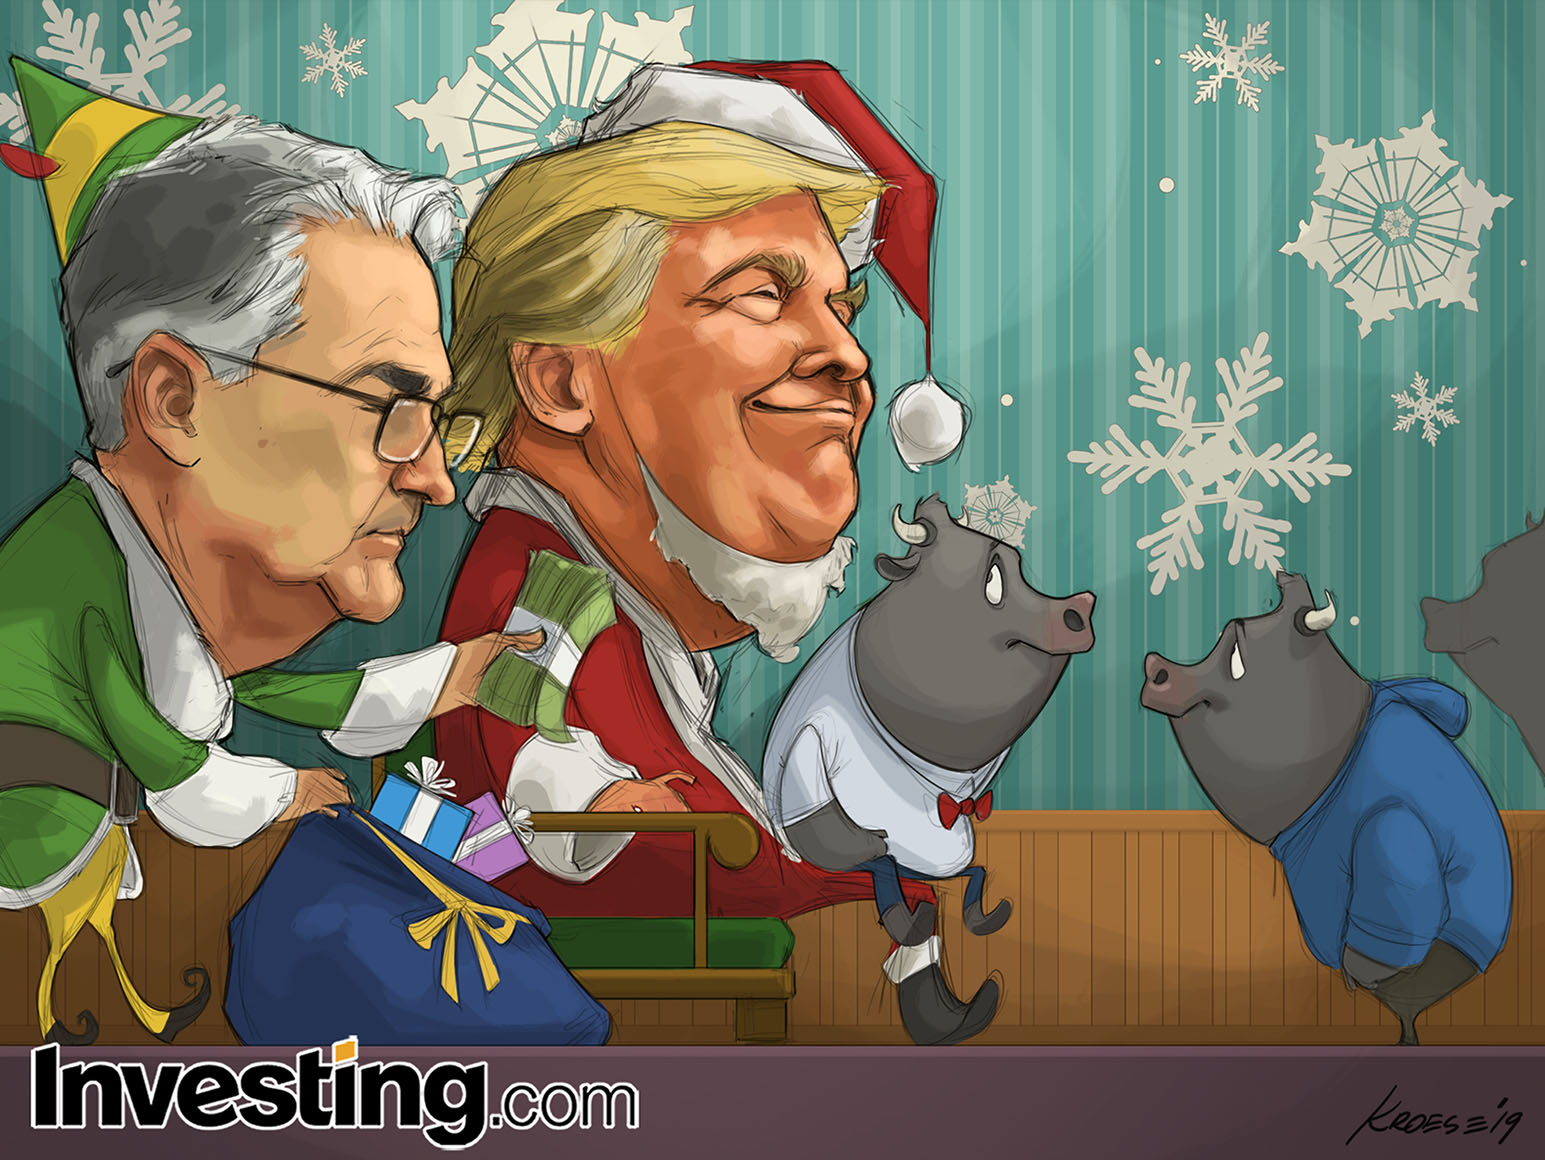 Счастливого Рождества и праздничного настроения от Investing.com!